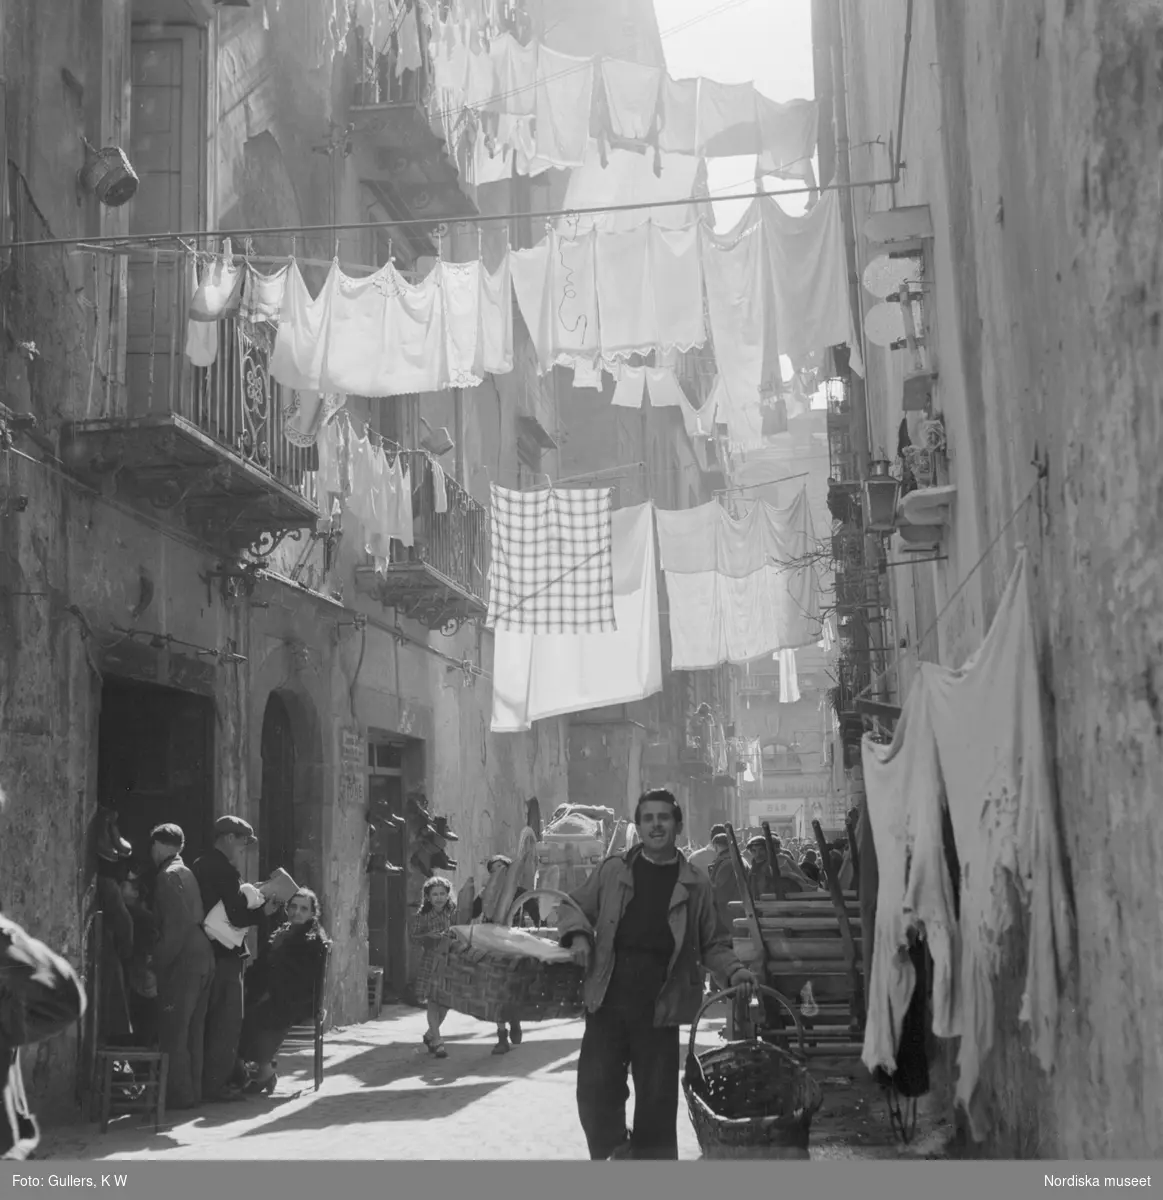 Gata i Neapel med folkvimmel och upphängd tvätt mellan husen. Utanför en port hänger skor till försäljning.